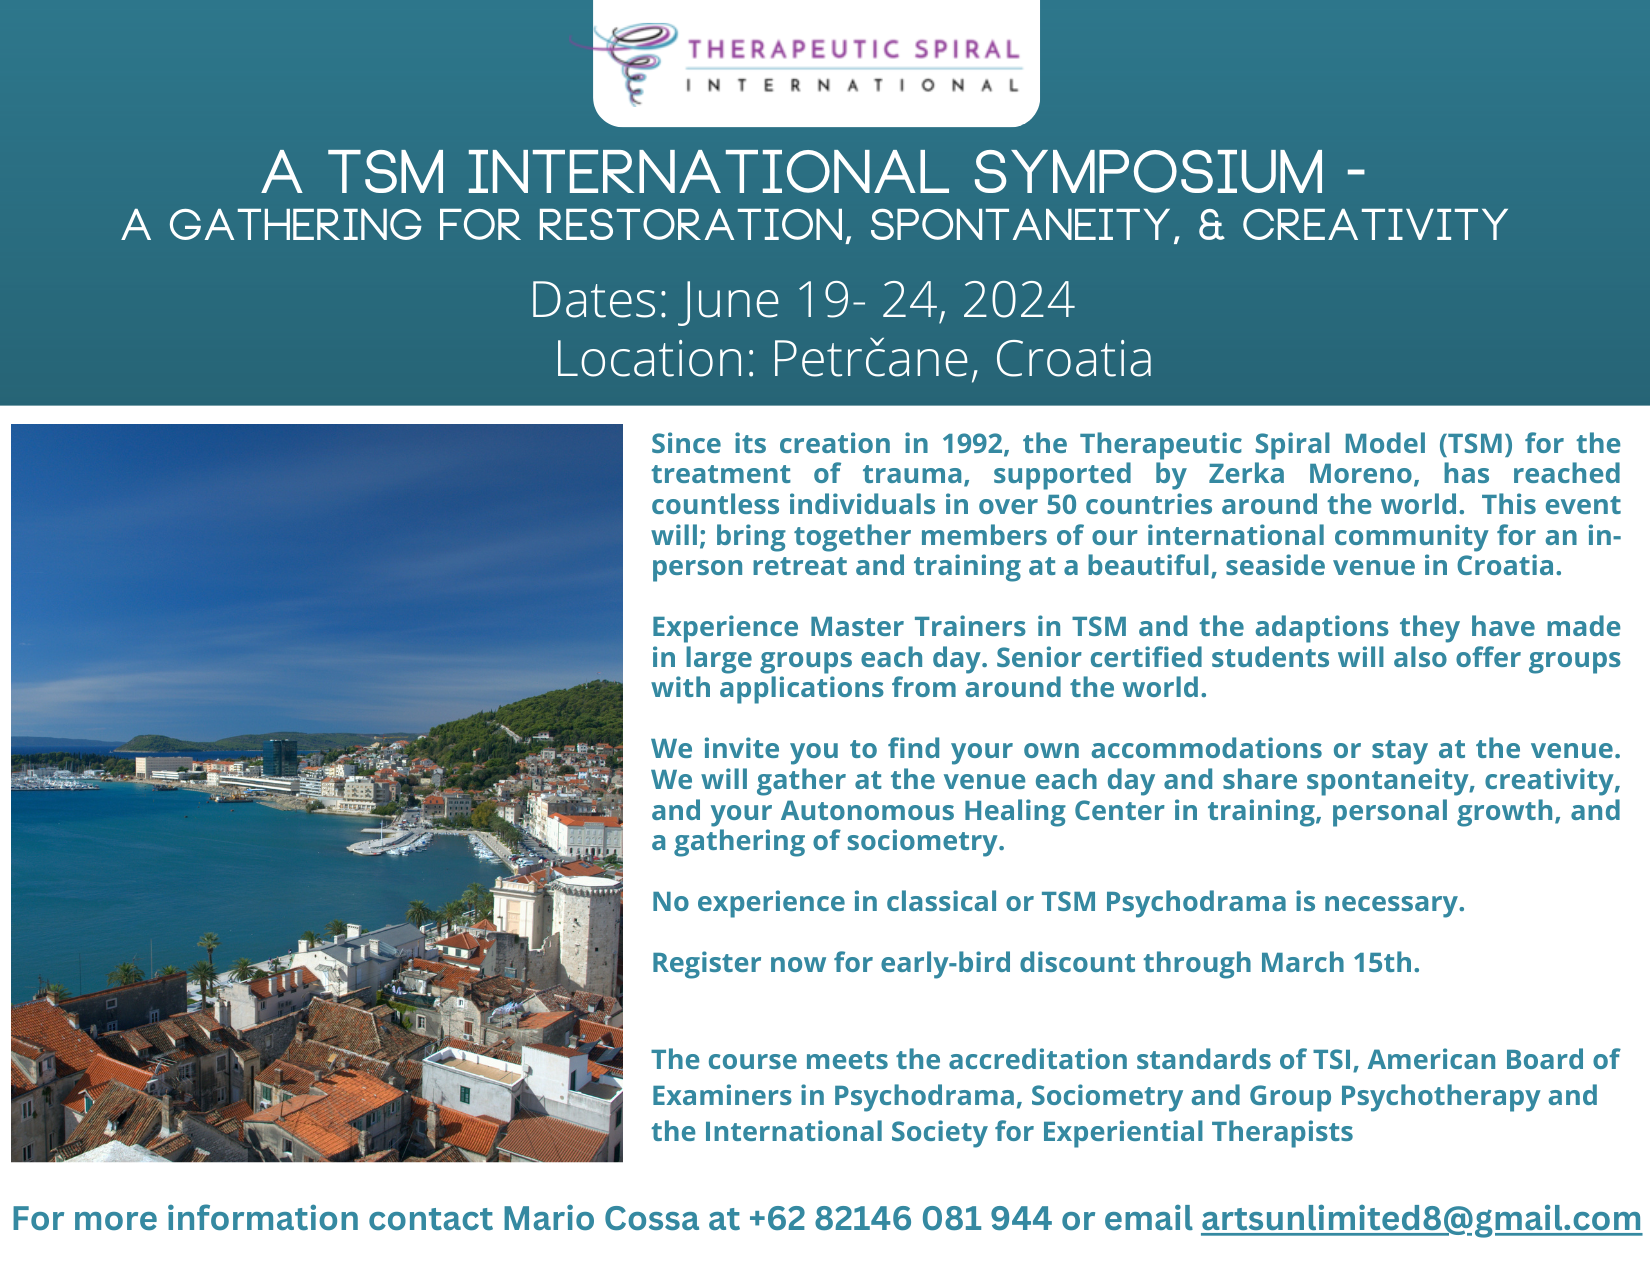 A TSM International Symposium- A Gathering for Restoration, Spontaneity, & Creativity @ Petrčane, Croatia